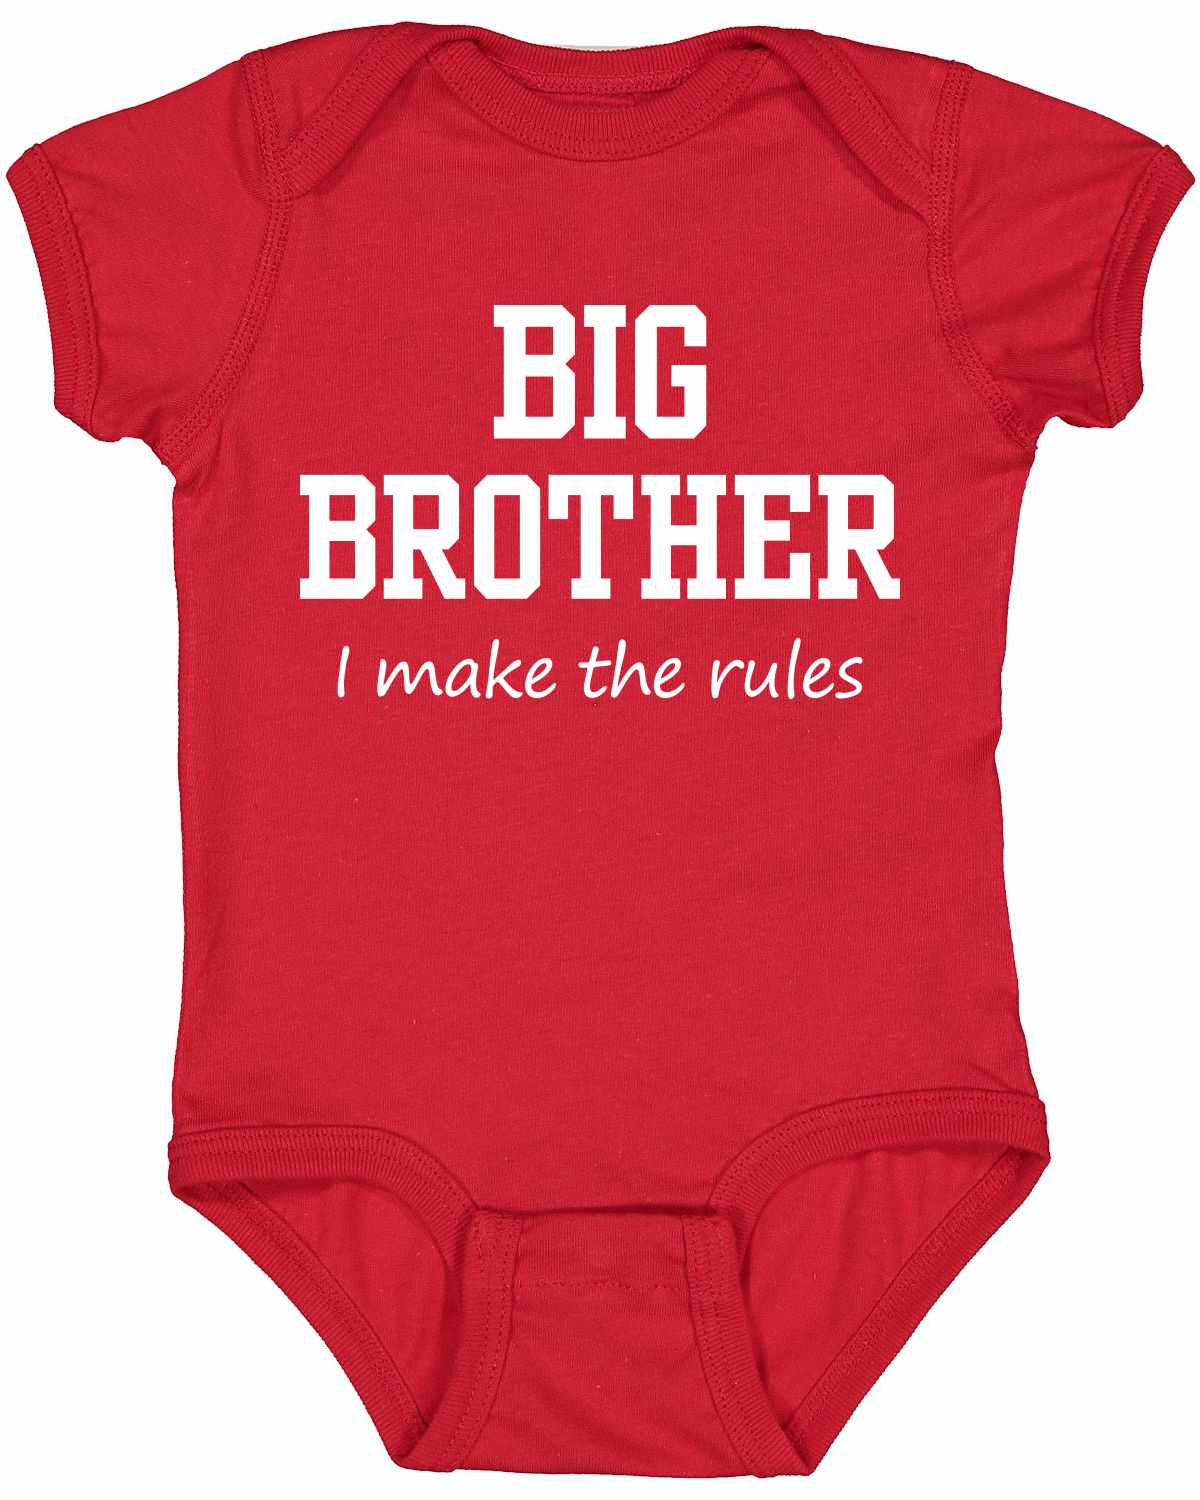 Big Brother - Make Rules on Infant BodySuit (#1373-10)